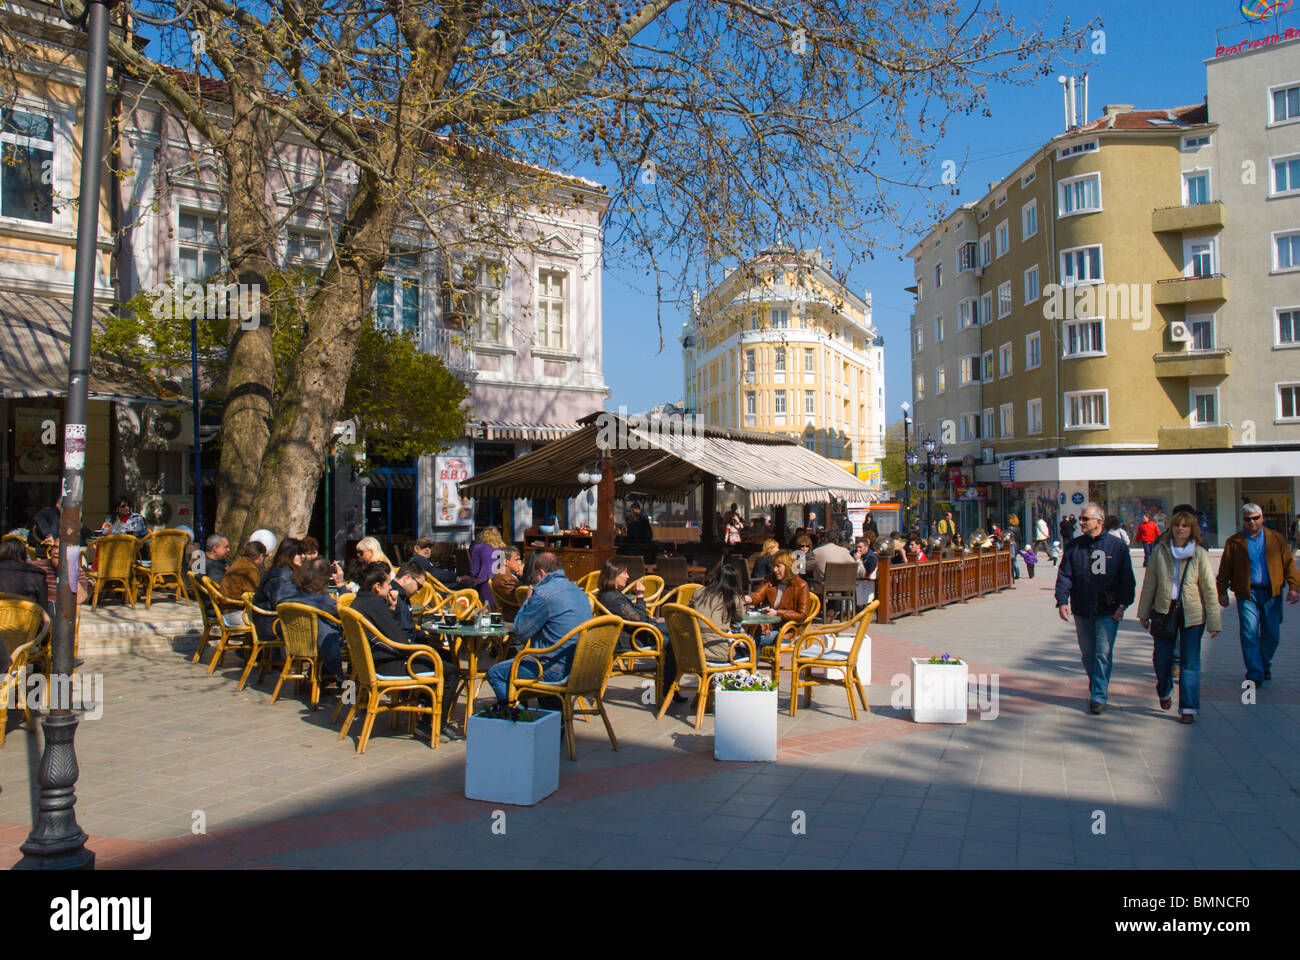 Pl piazza Nezavisimost centrale di Varna il litorale del Mar Nero in Bulgaria in Europa Foto Stock